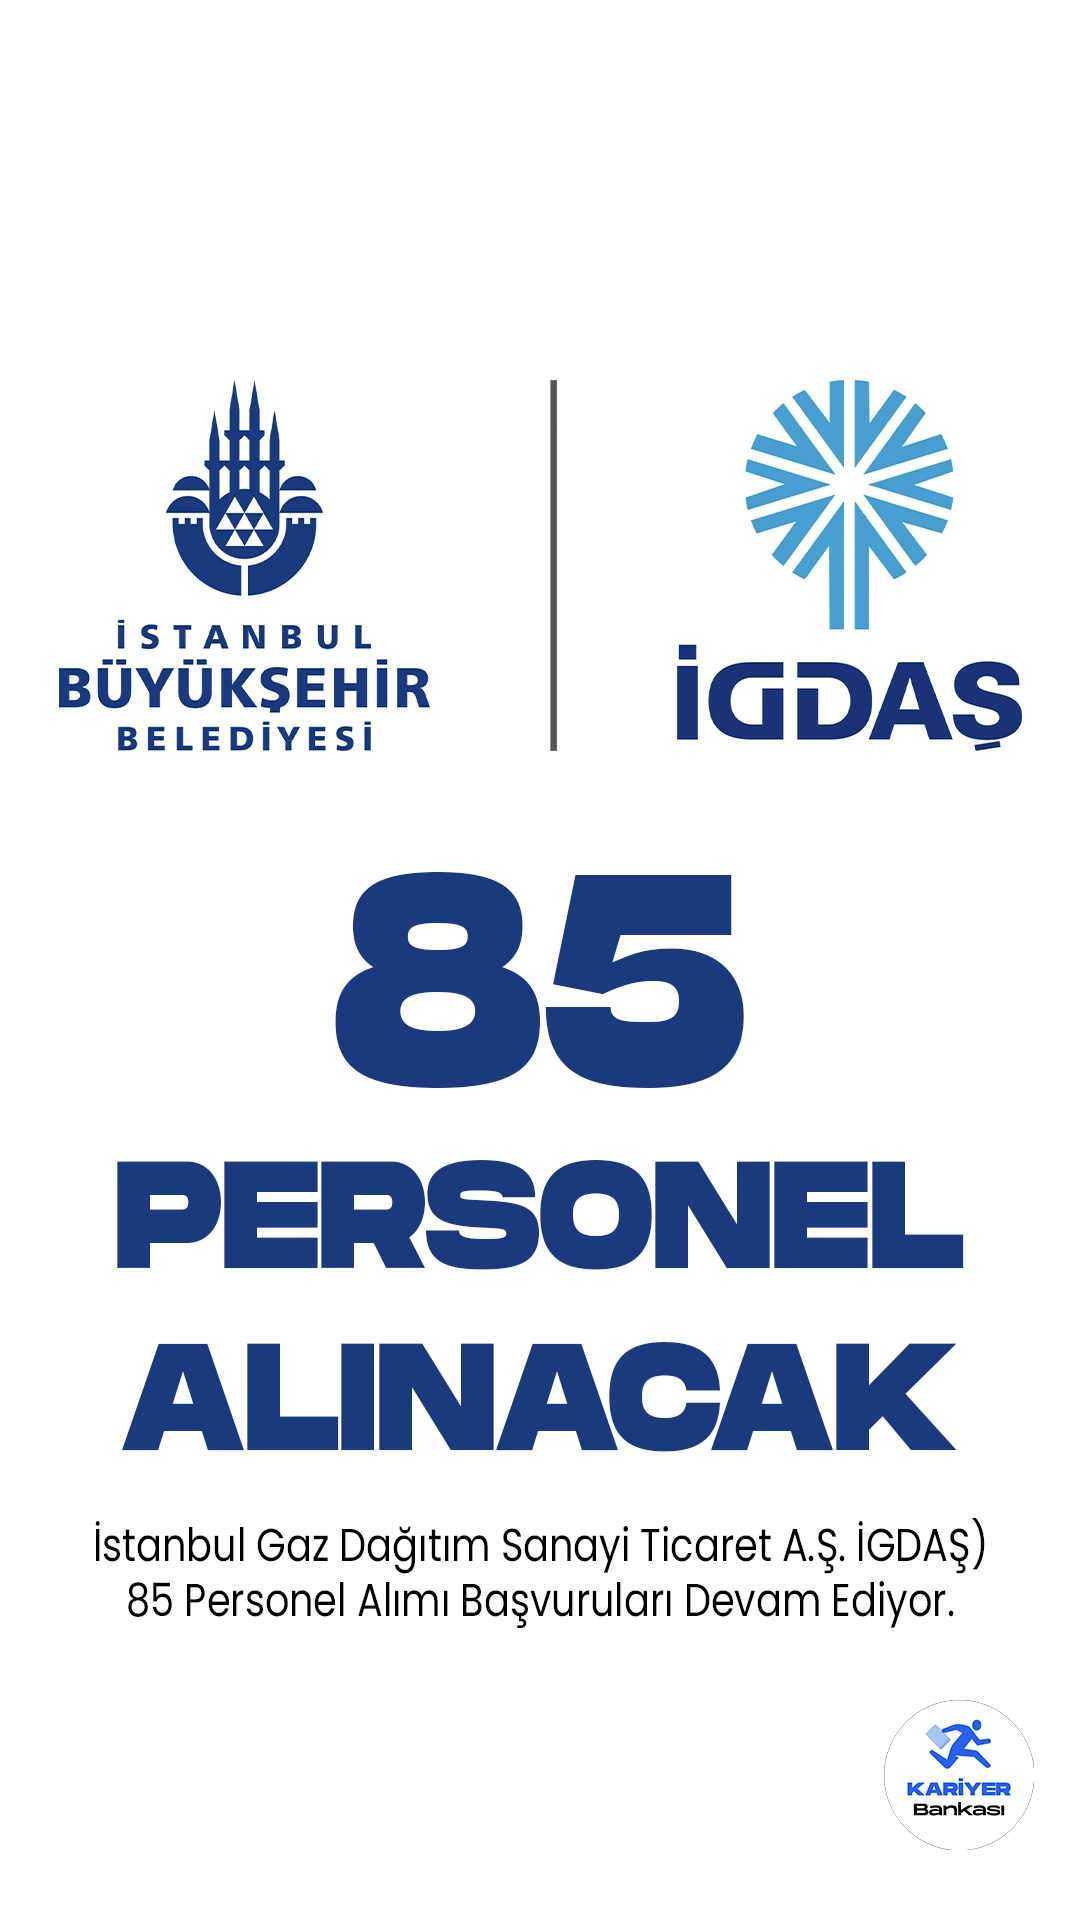 İstanbul Gaz Dağıtım Sanayi Ticaret A.Ş. İGDAŞ) 85 Personel Alımı Başvuruları Devam Ediyor.